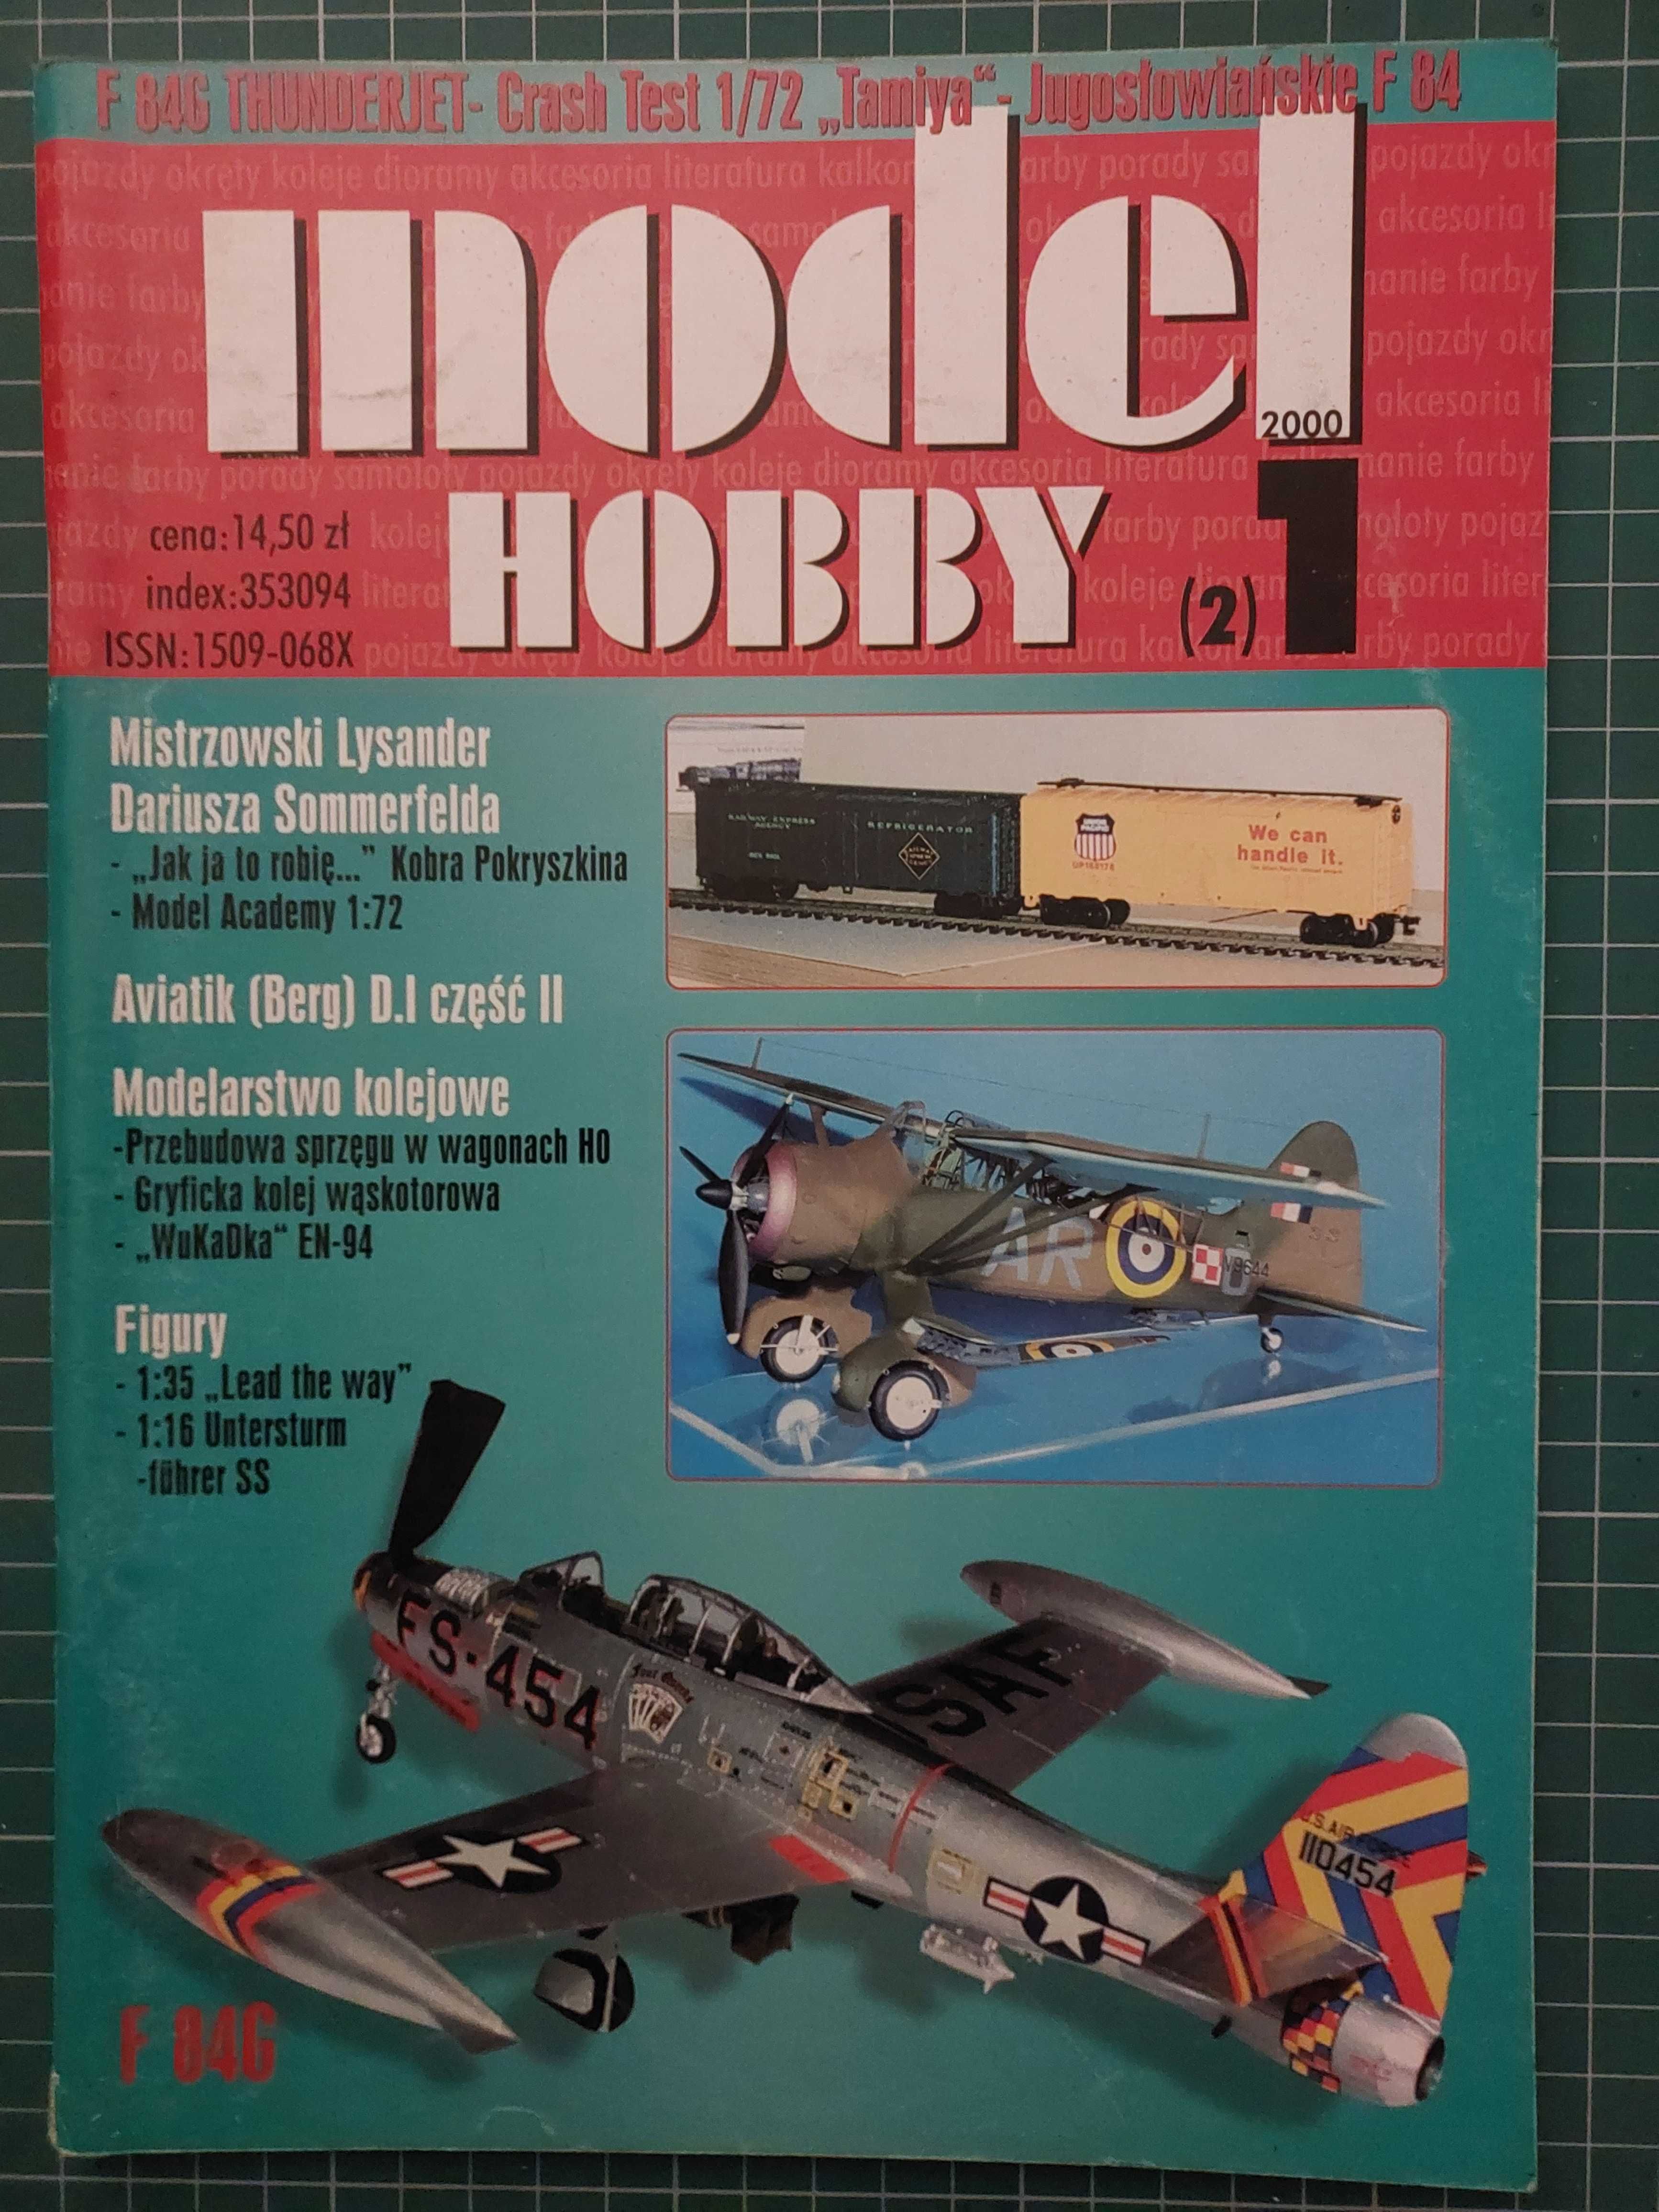 Sprzedam czasopismo Model Hobby, nr 1-6, rocznik 2000